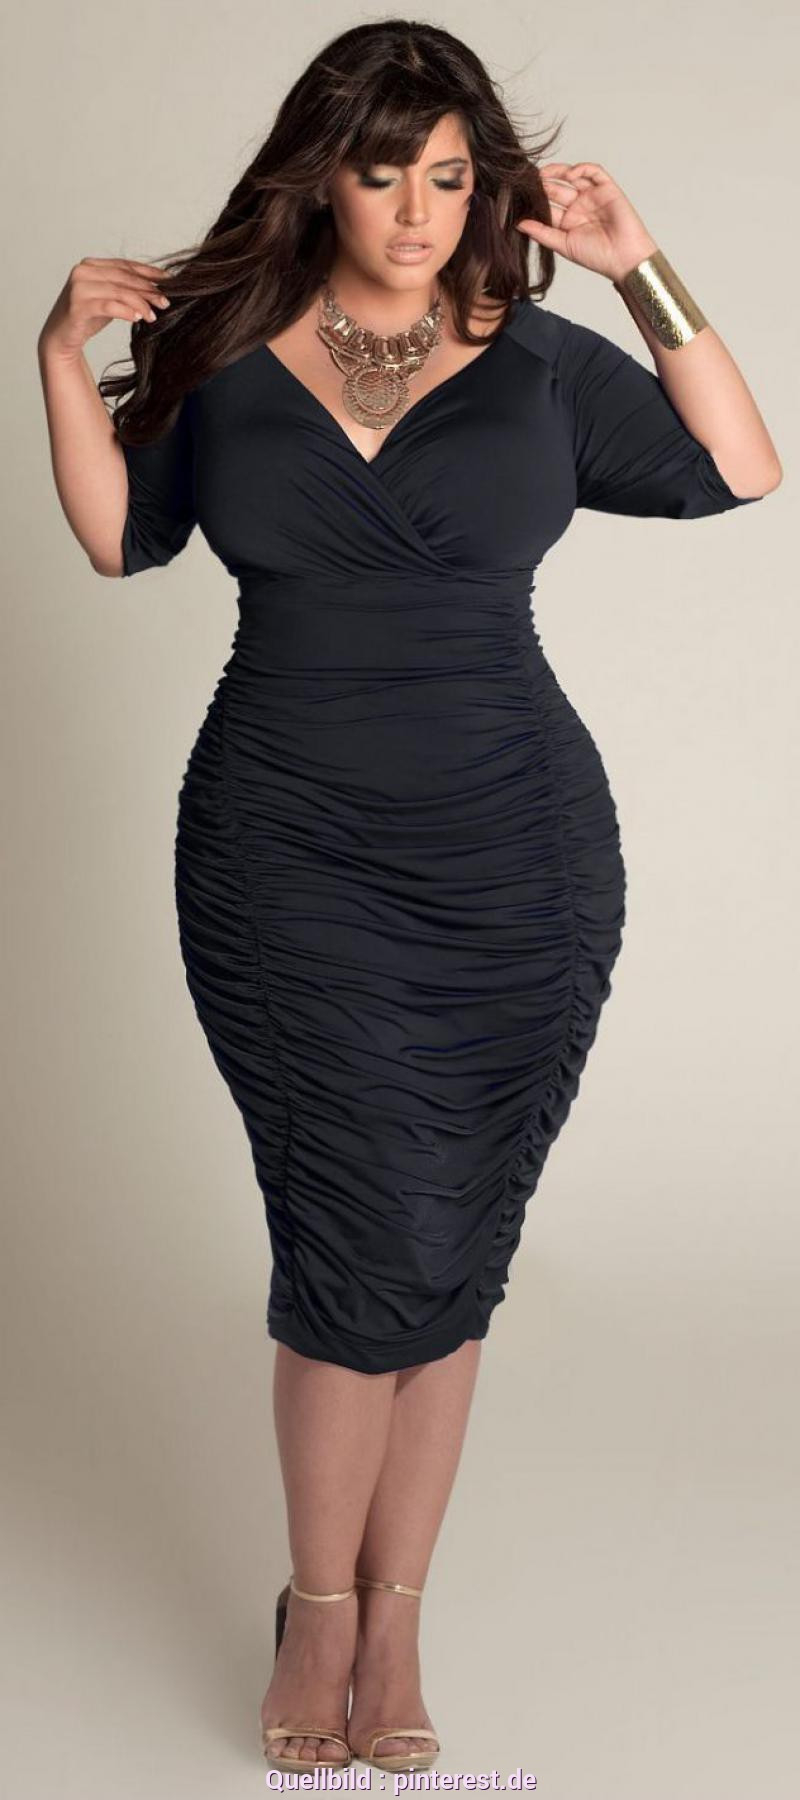 Sinnvoll Schwarzes Kleid In Übergröße Pin Von Pamela Bell